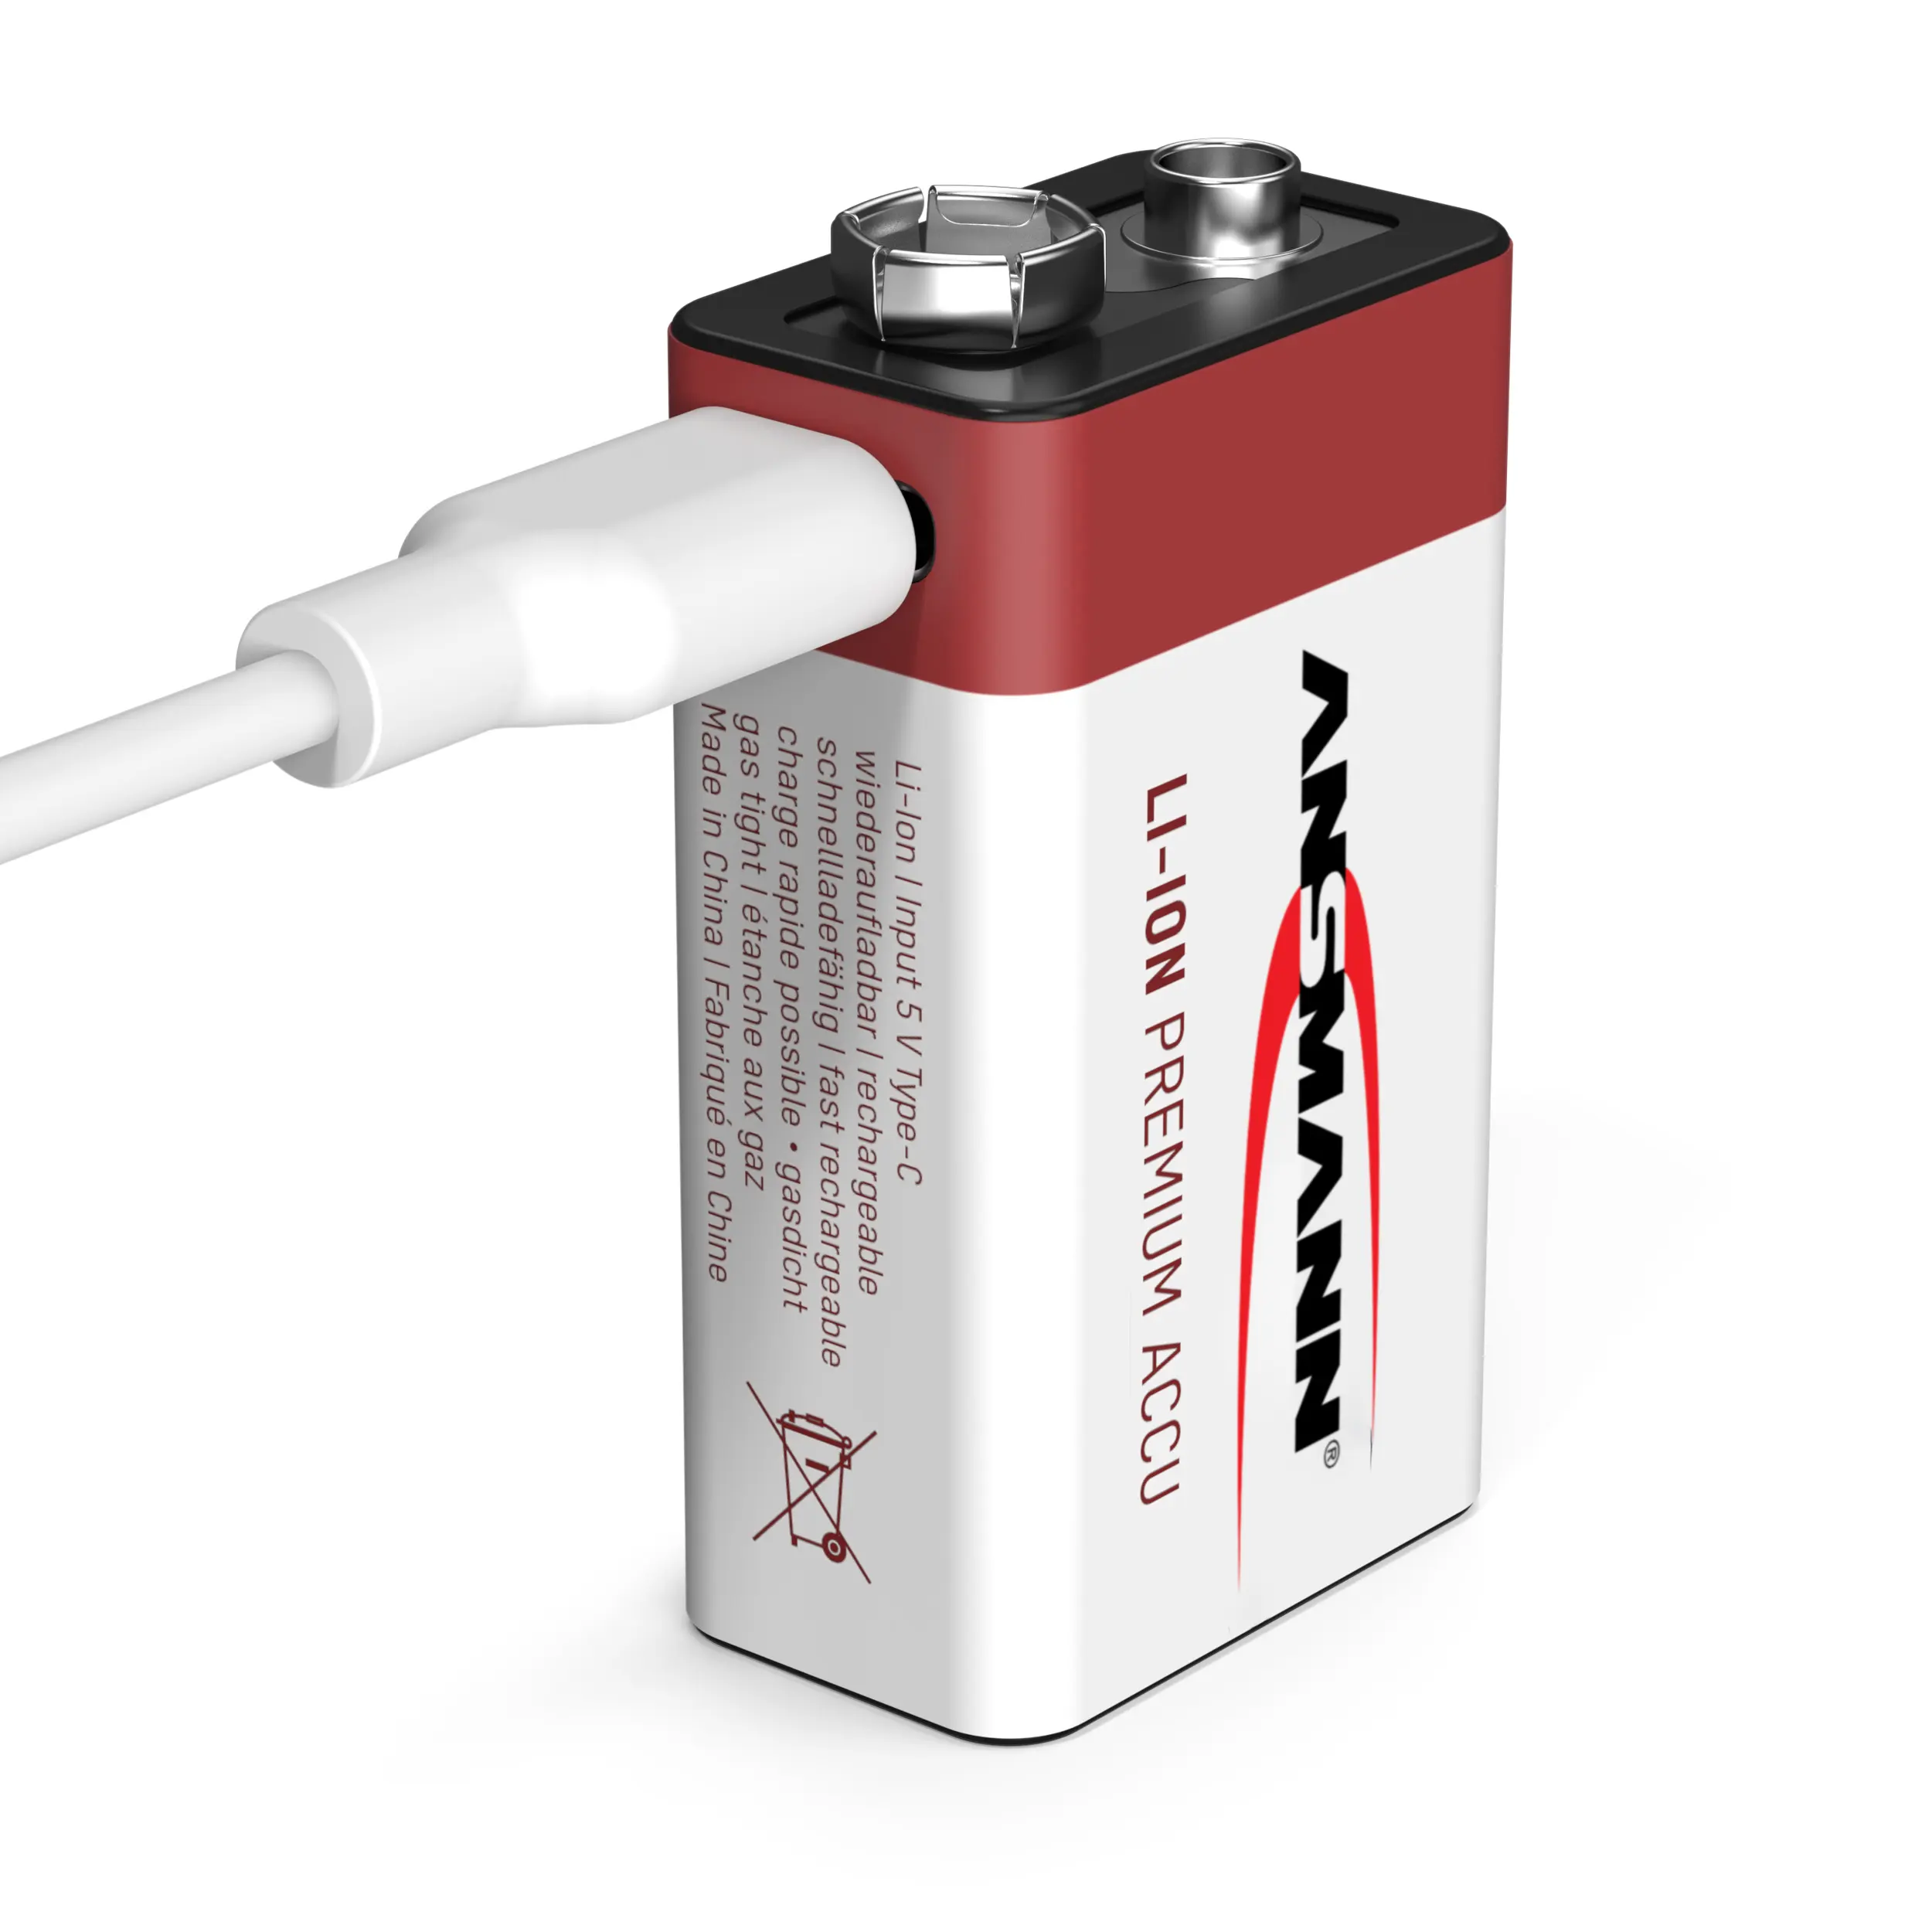 Batteria USB più popolare Best Seller batteria a secco di ricambio batteria ricaricabile agli ioni di litio 9V